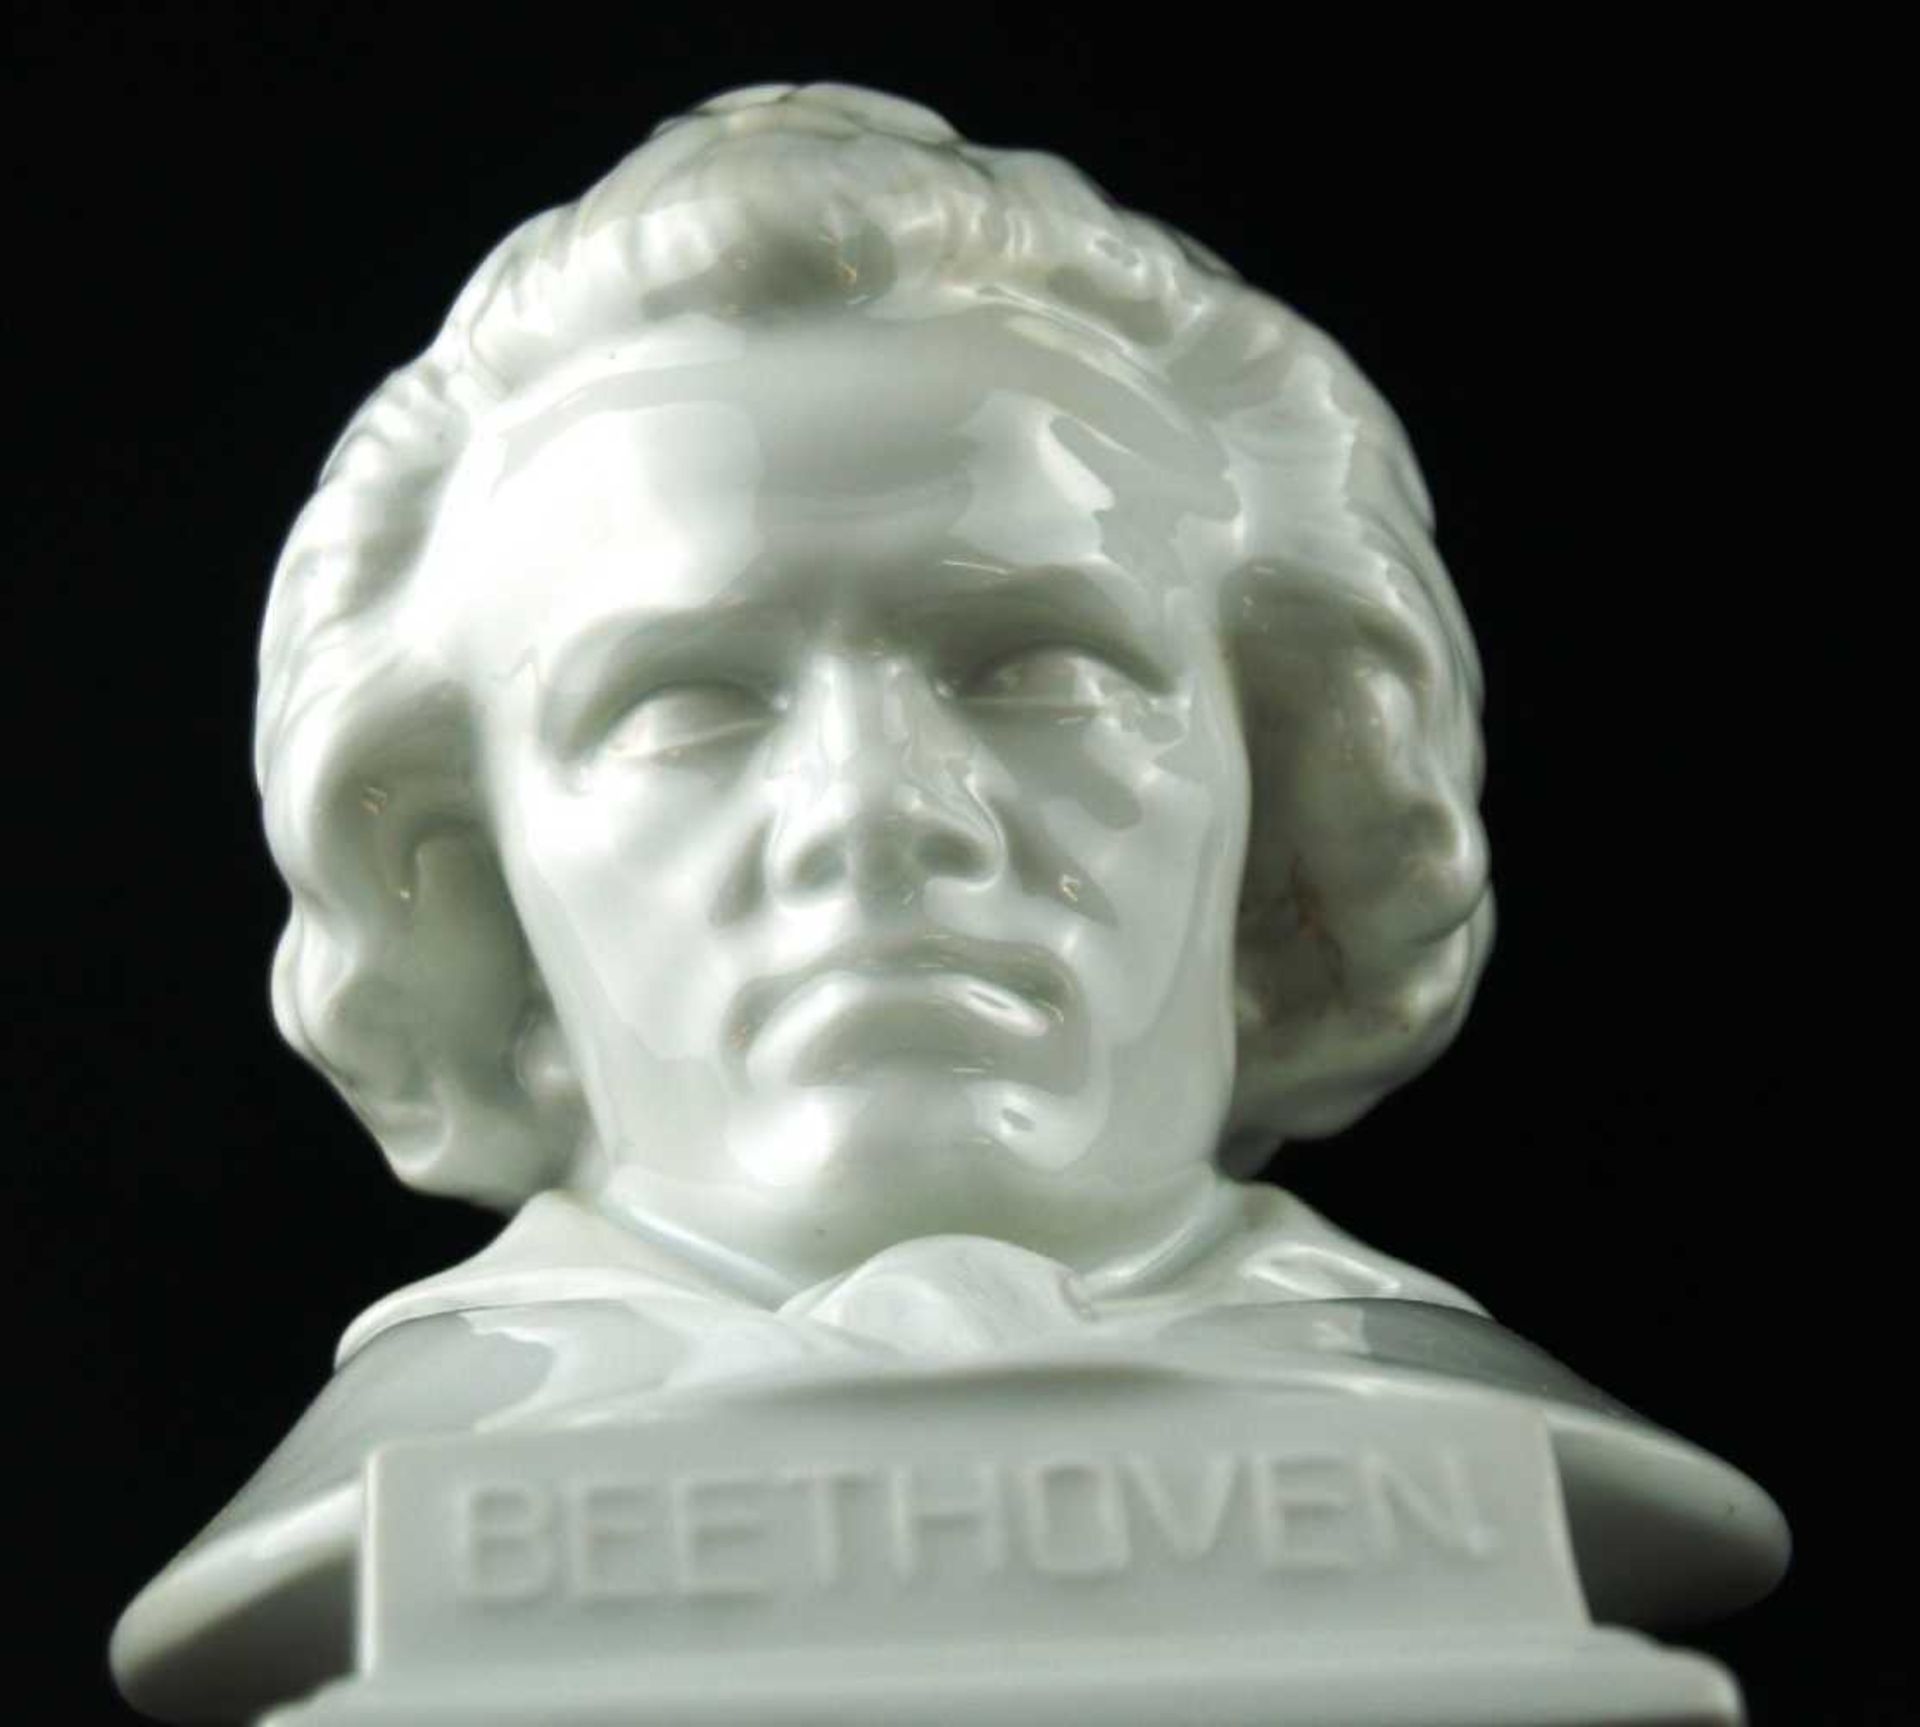 2 Porzellanbüsten - Herend,20 Jhdt. Weißporzellan, Büsten der Komponisten "Beethoven", "Wagner", - Bild 2 aus 4